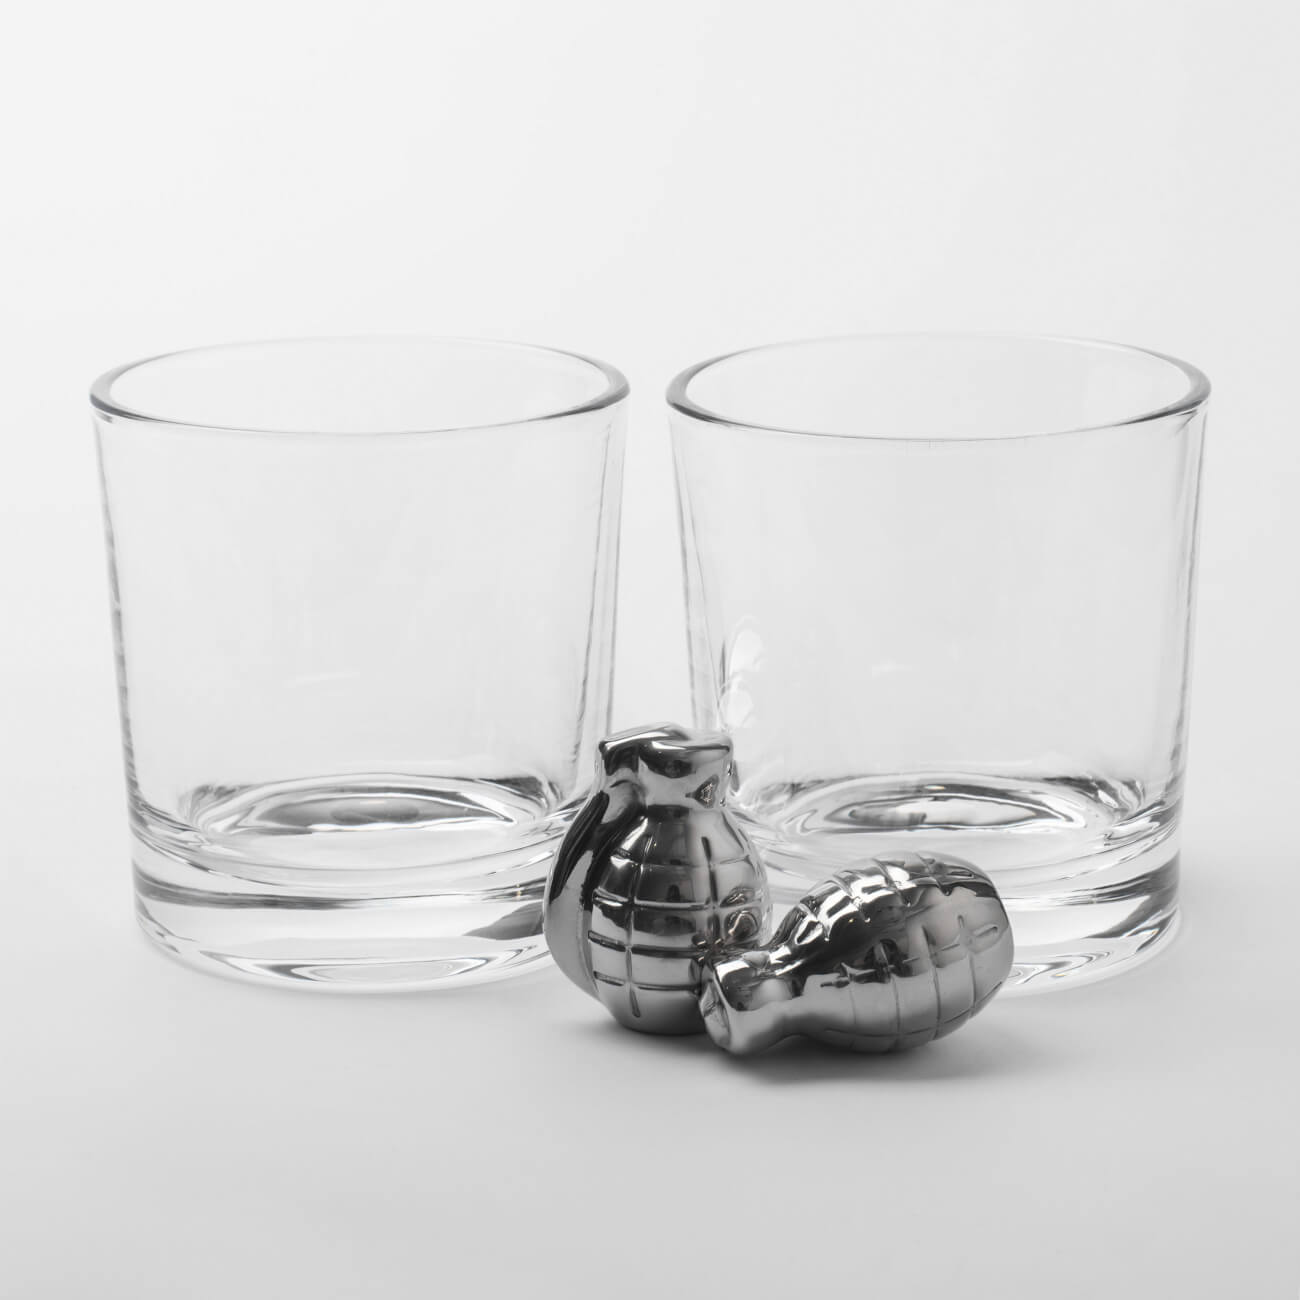 Набор для виски, 2 перс, 4 пр, стаканы/кубики, стекло/сталь, Граната, Bullet кубики